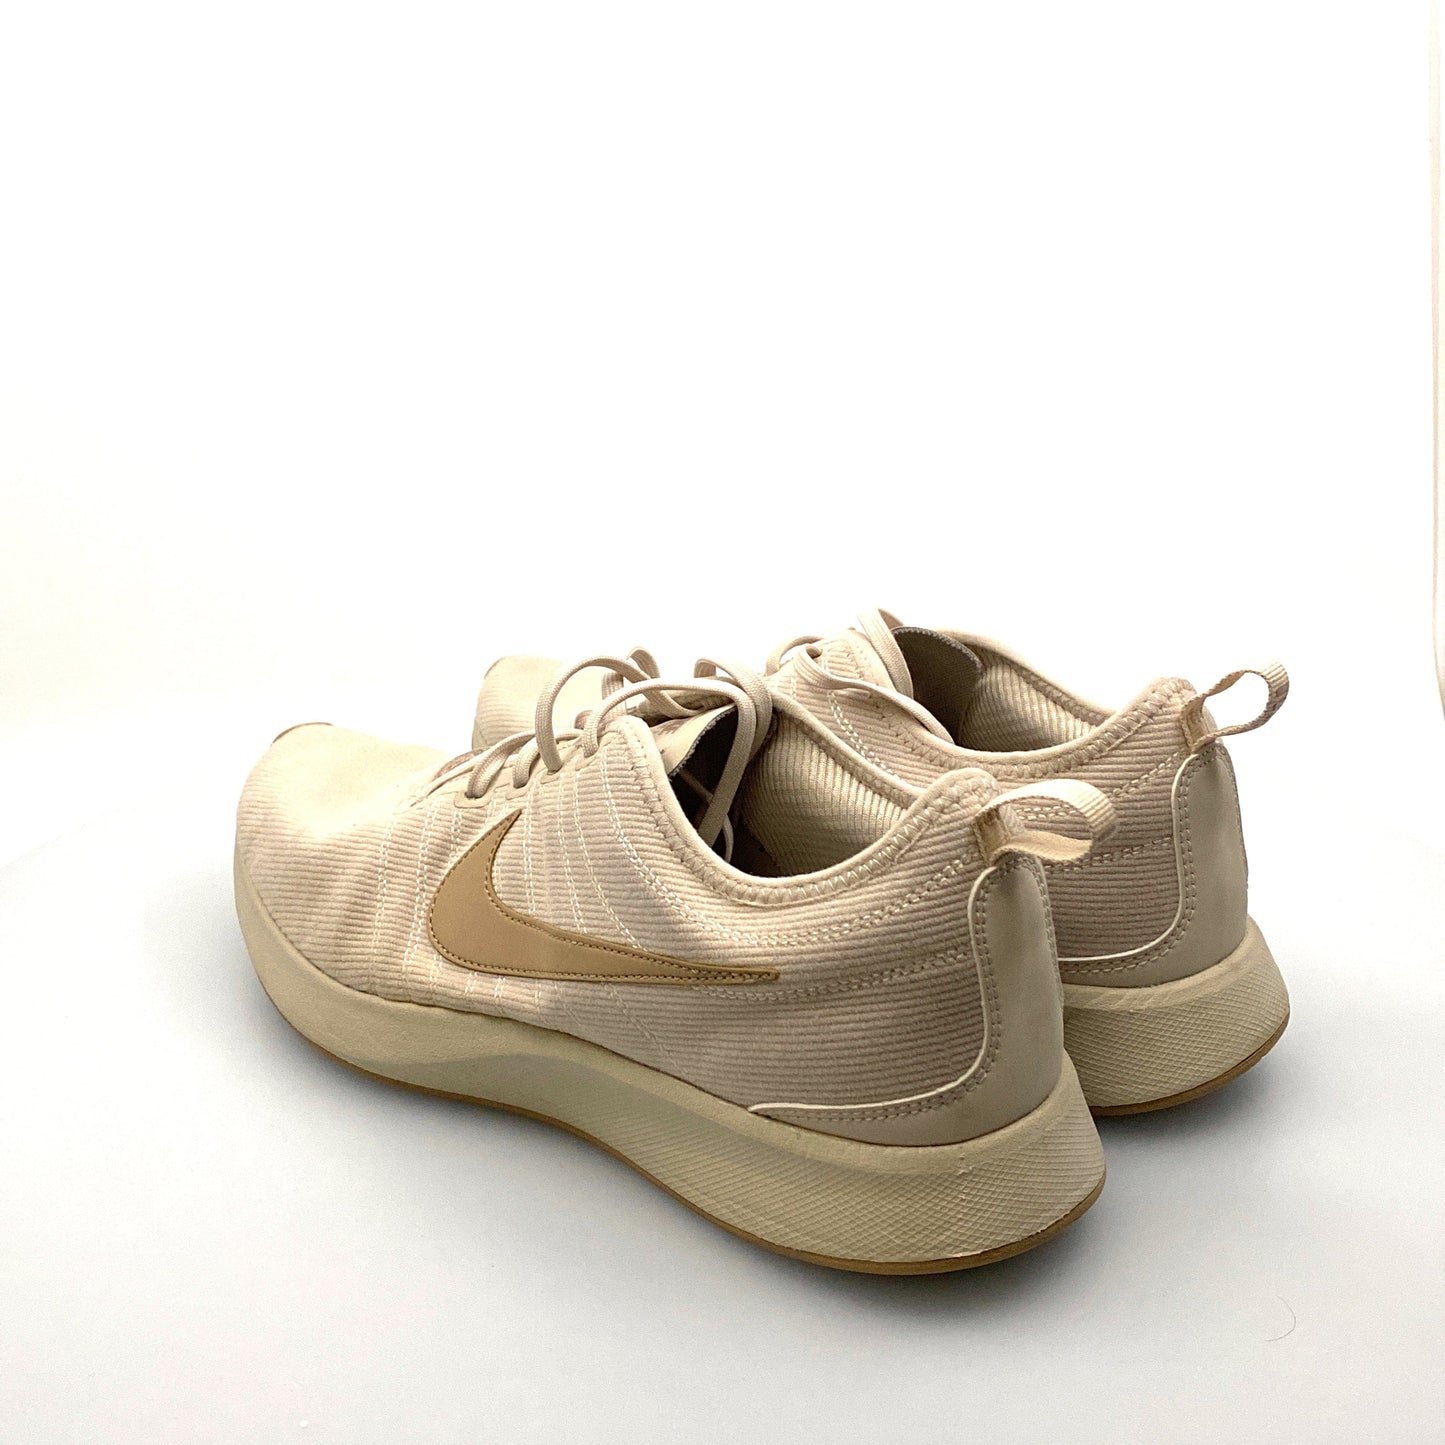 Nike Womens Size 9.5 Beige Dualtone Racer Desert Sand Running Shoes